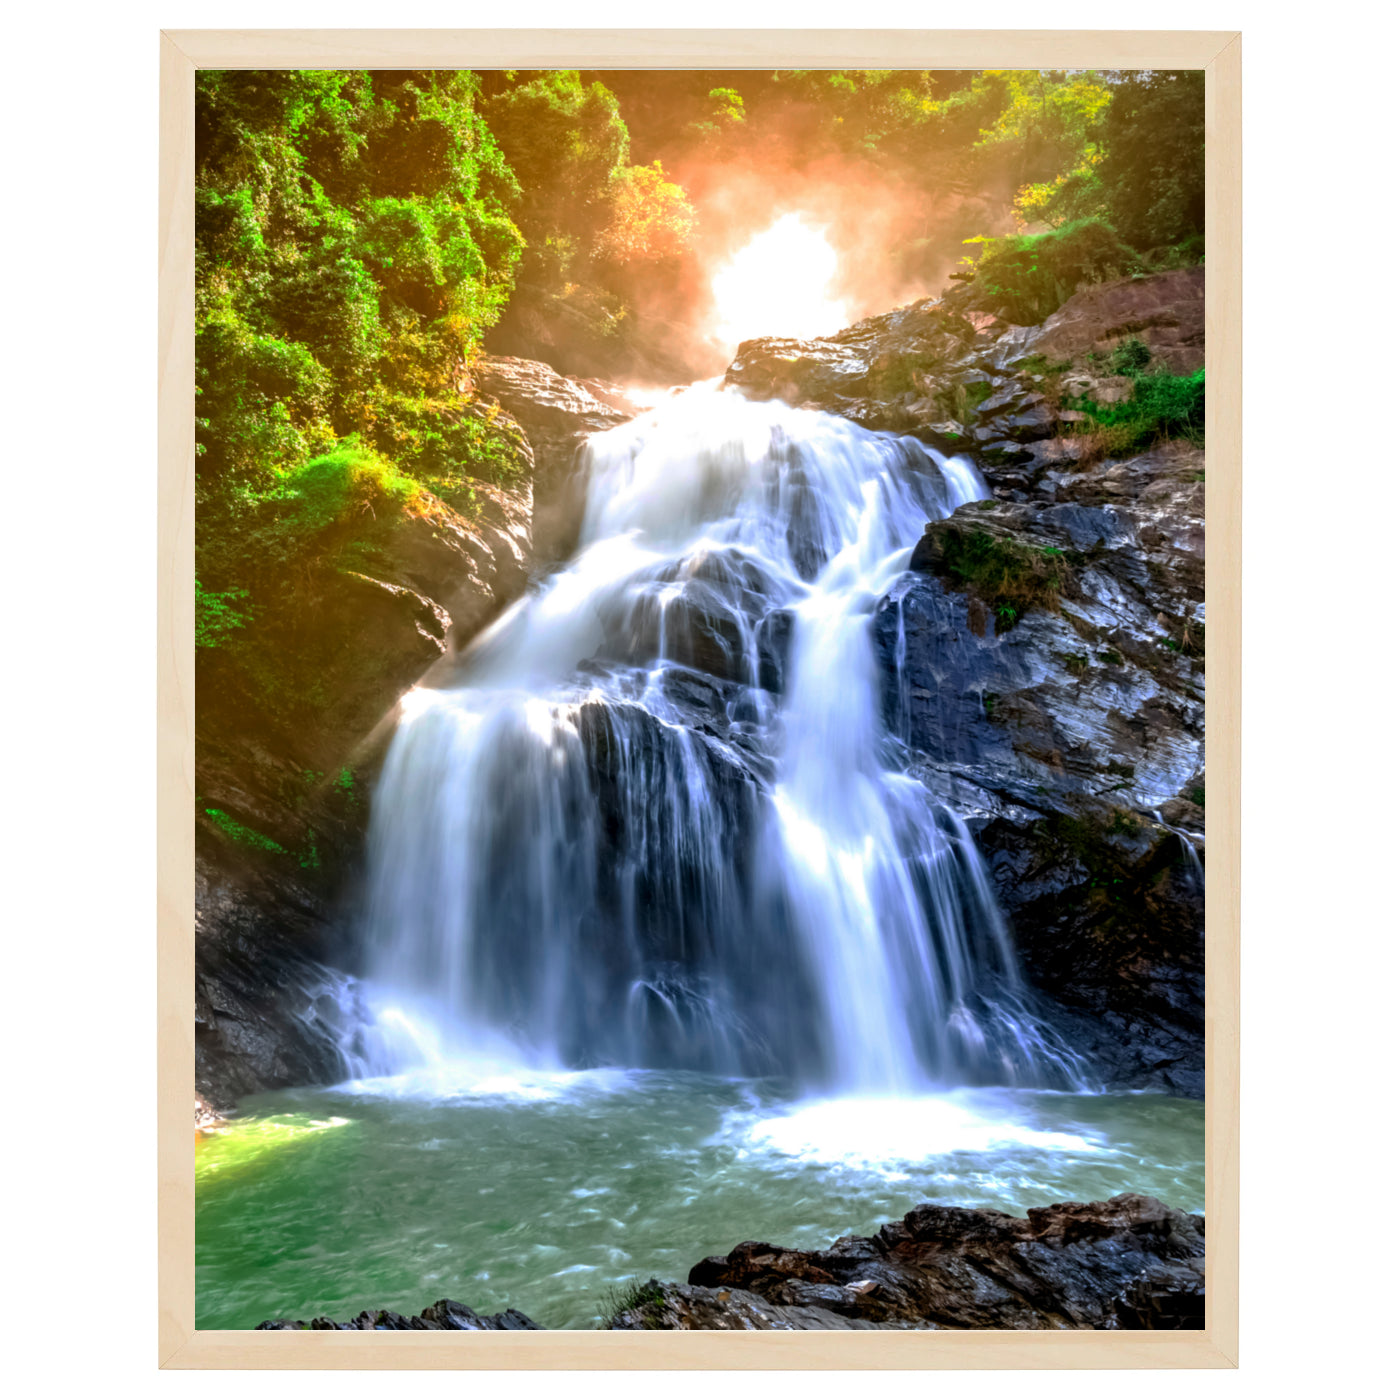 Et majestætisk vandfald fordeler sig i to mindre vandfald og ender i en smuk sø, omgivet af frodig skov og badet i magisk lys.